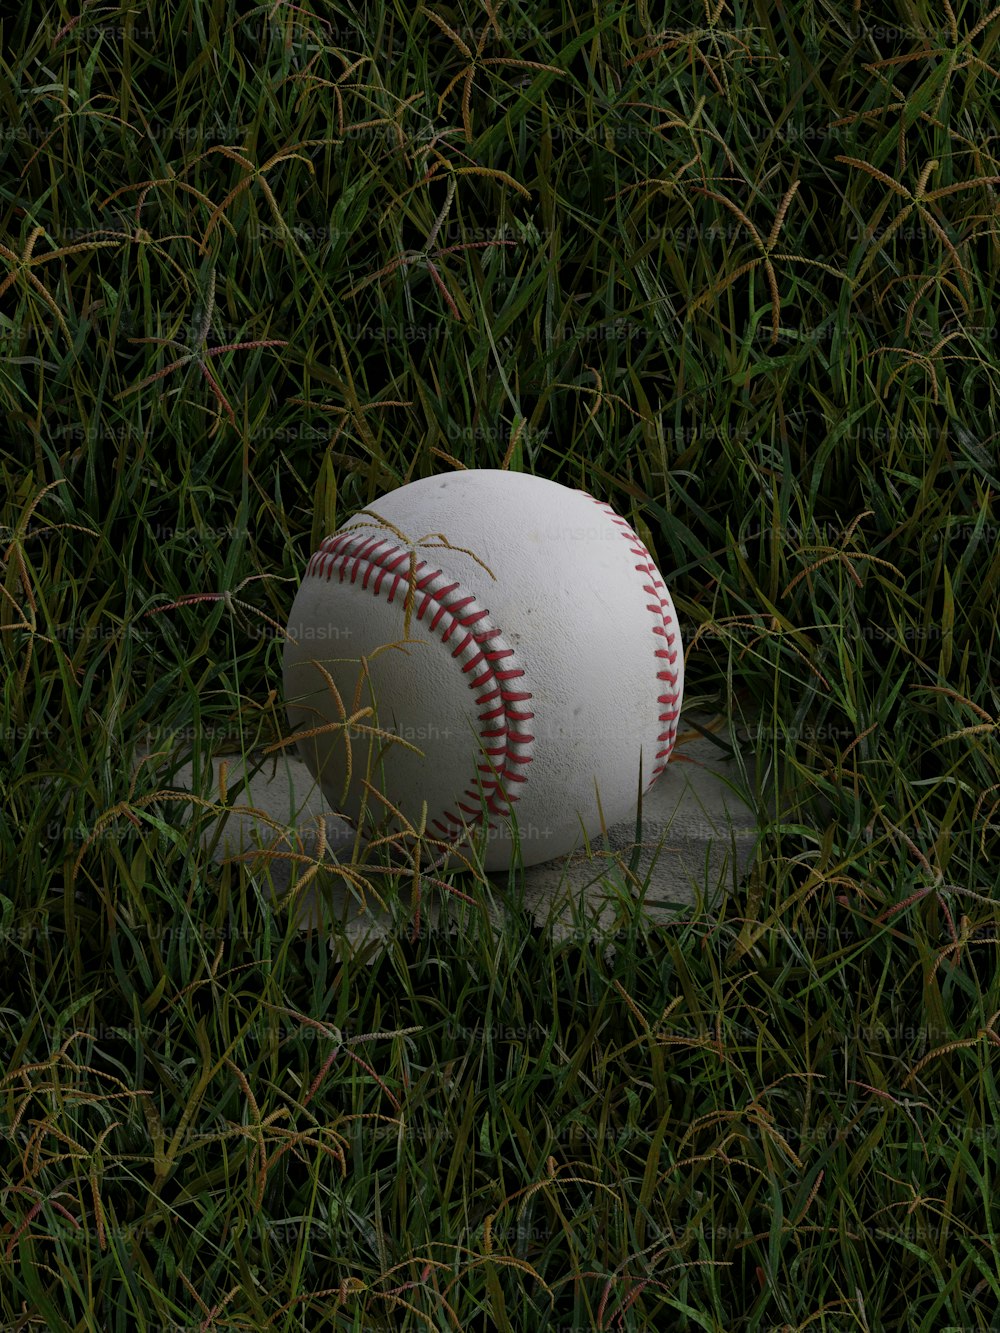 Una palla da baseball che giace sopra una palla da baseball nell'erba